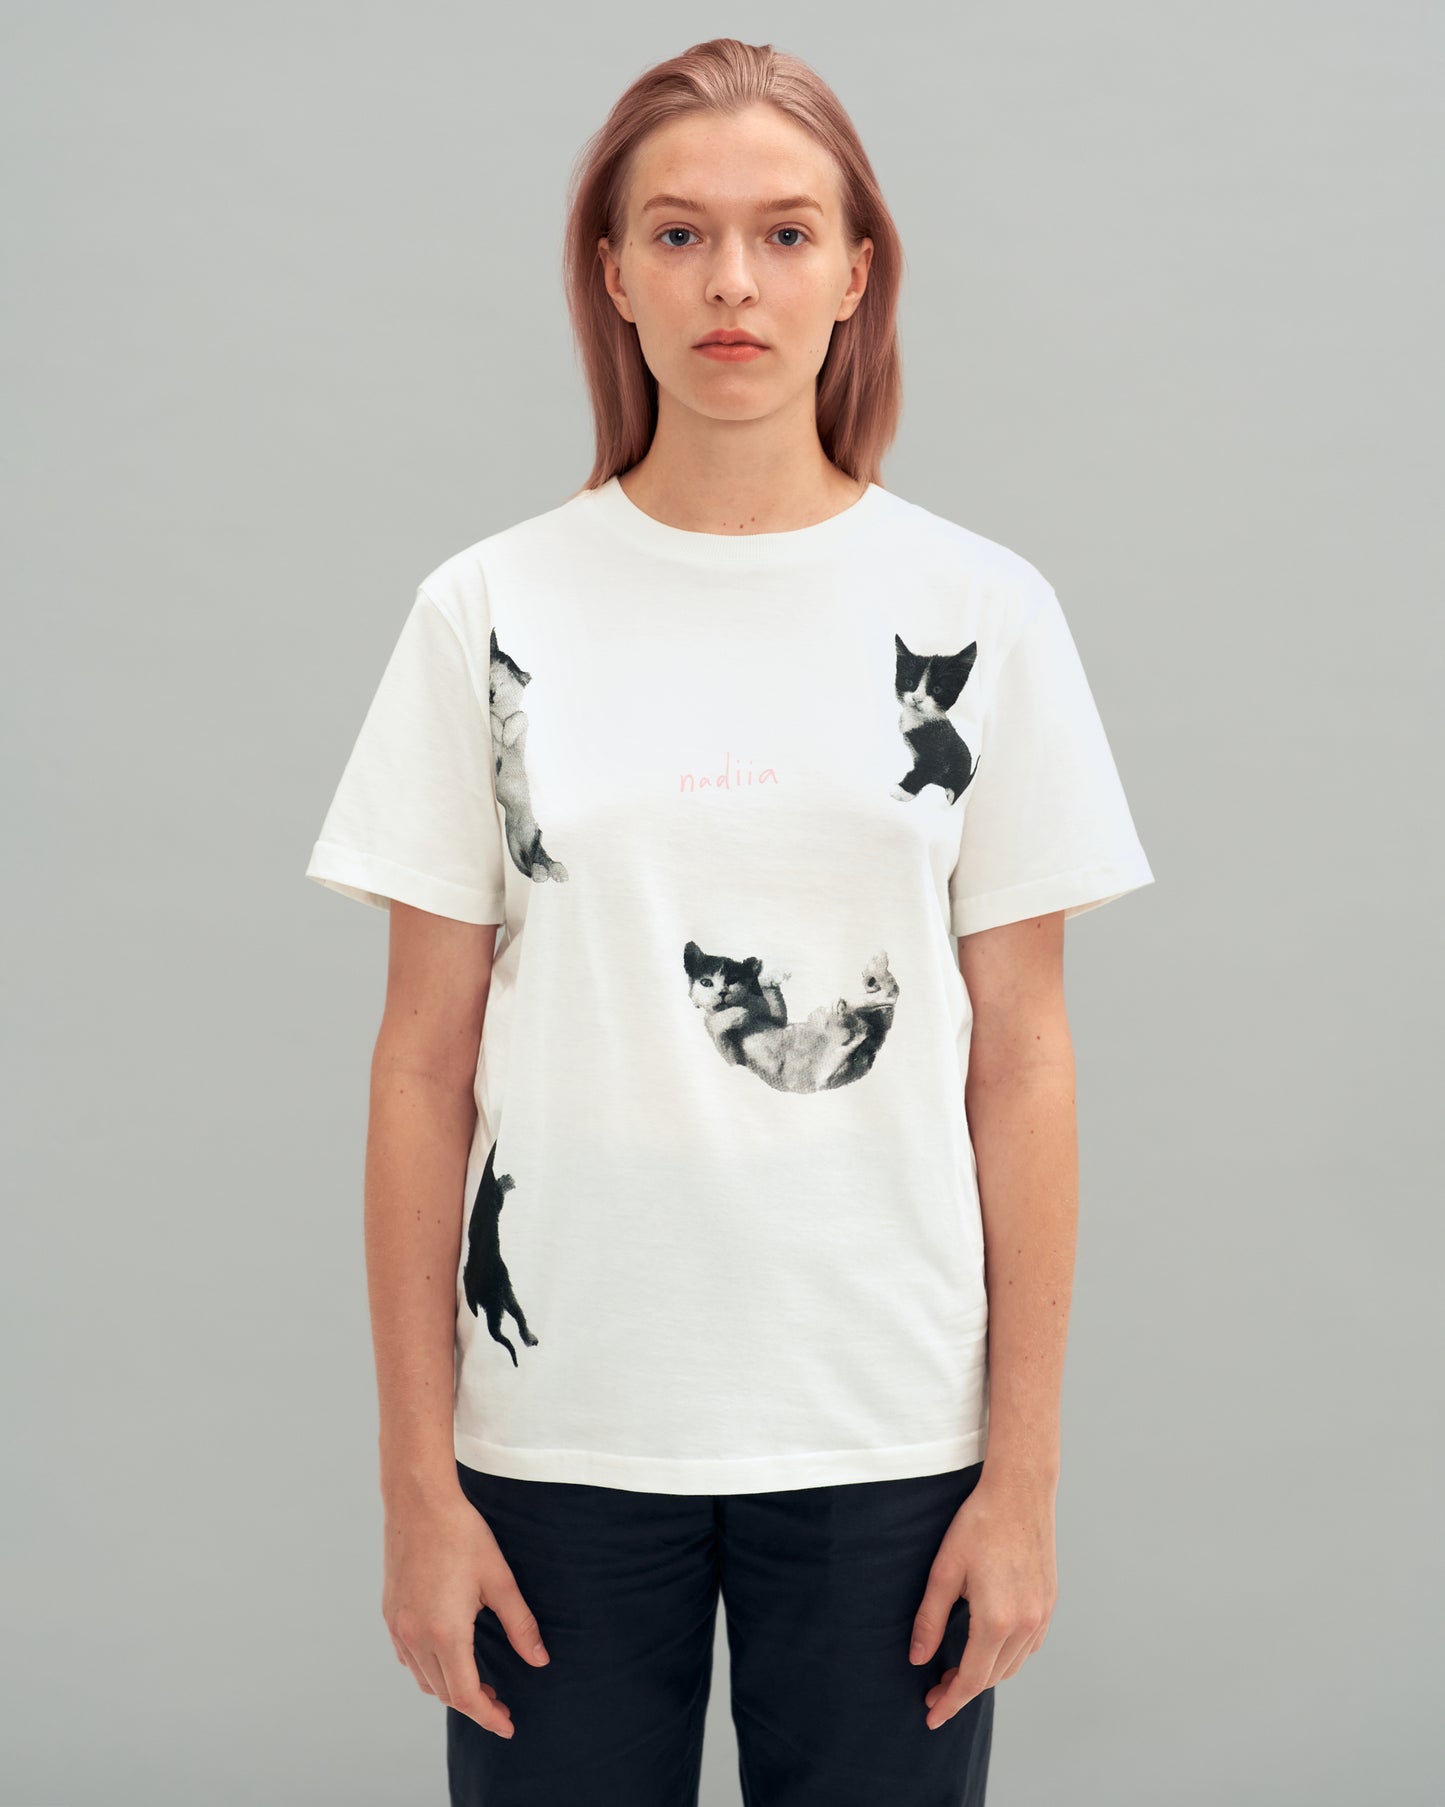 4 Cats T-Shirt